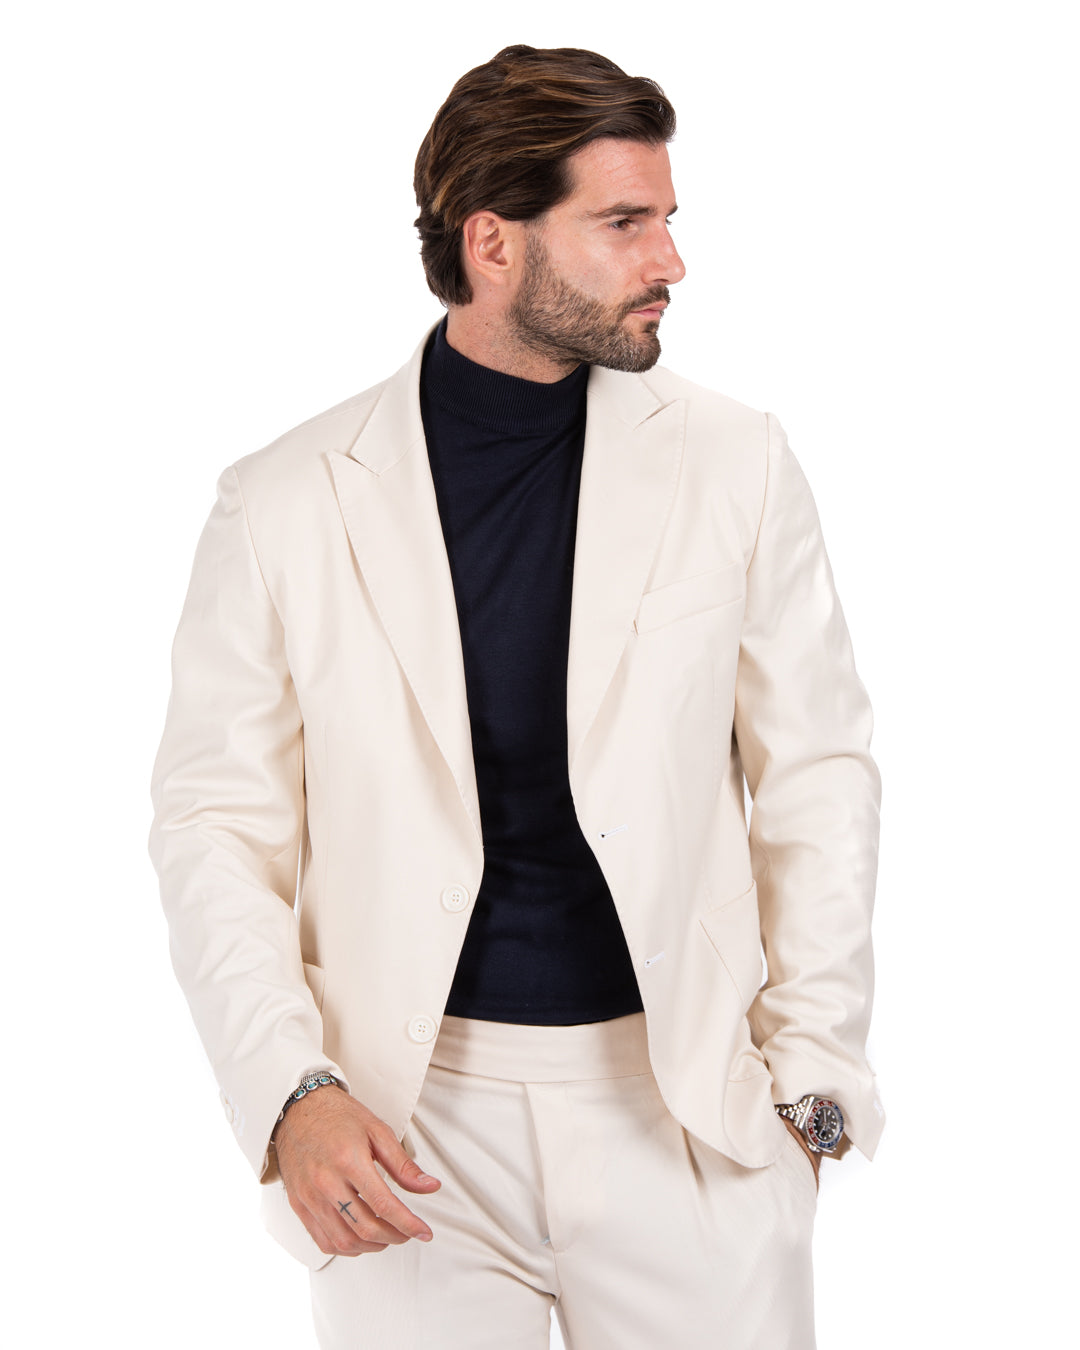 Bond - cream double stitched jacket